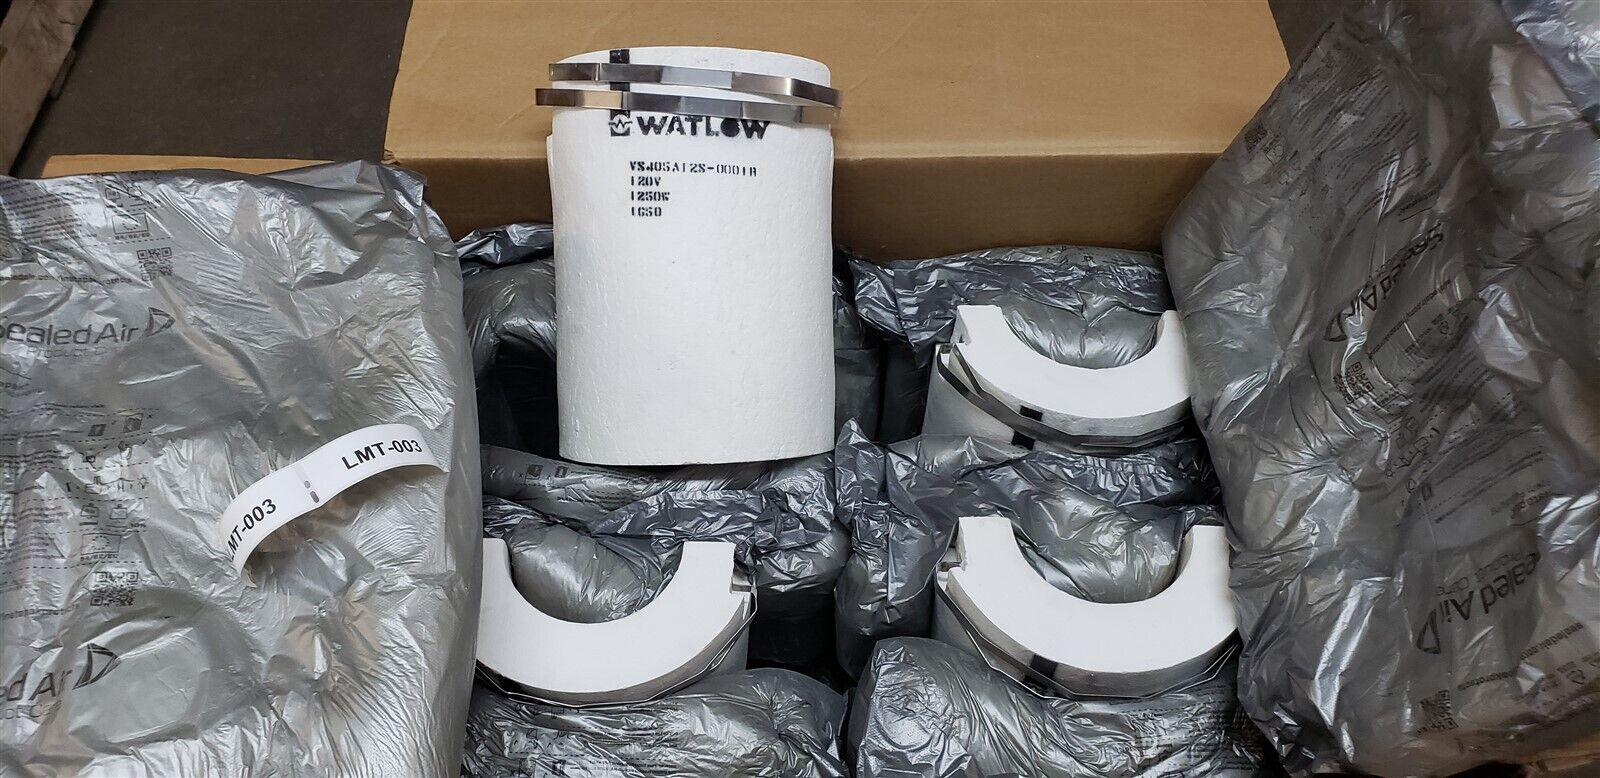 Watlow Ceramic Fiber Heater VS405A12S-0001R 120V 1250W Semi Cylinder New